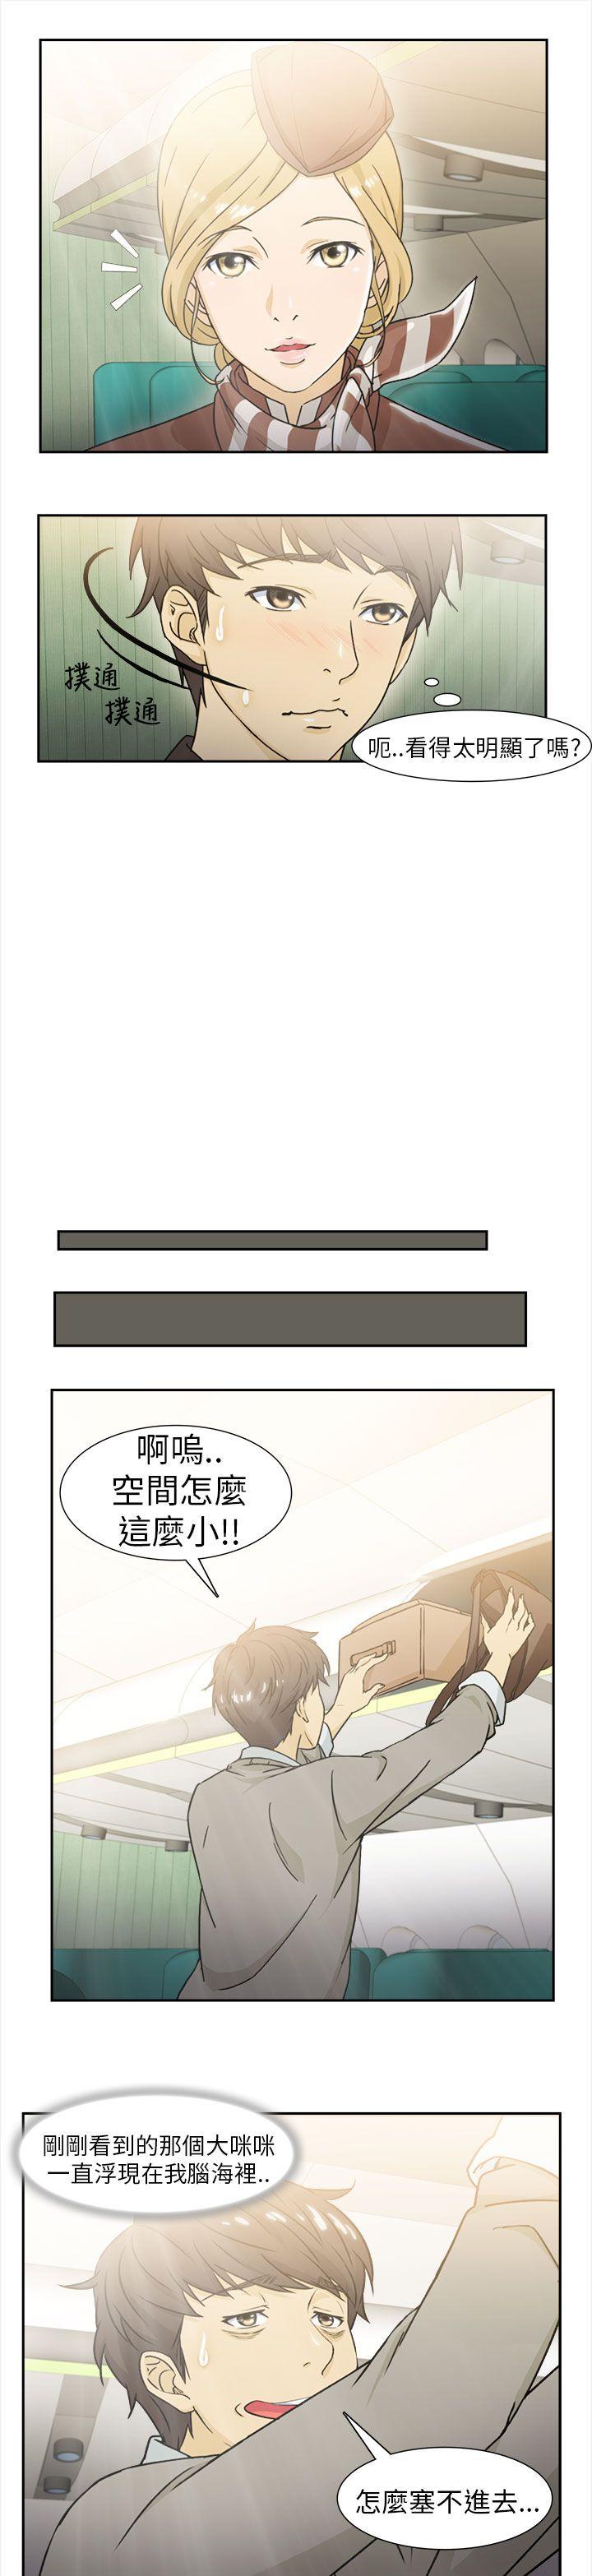 制服的诱惑  空姐(1) 漫画图片5.jpg